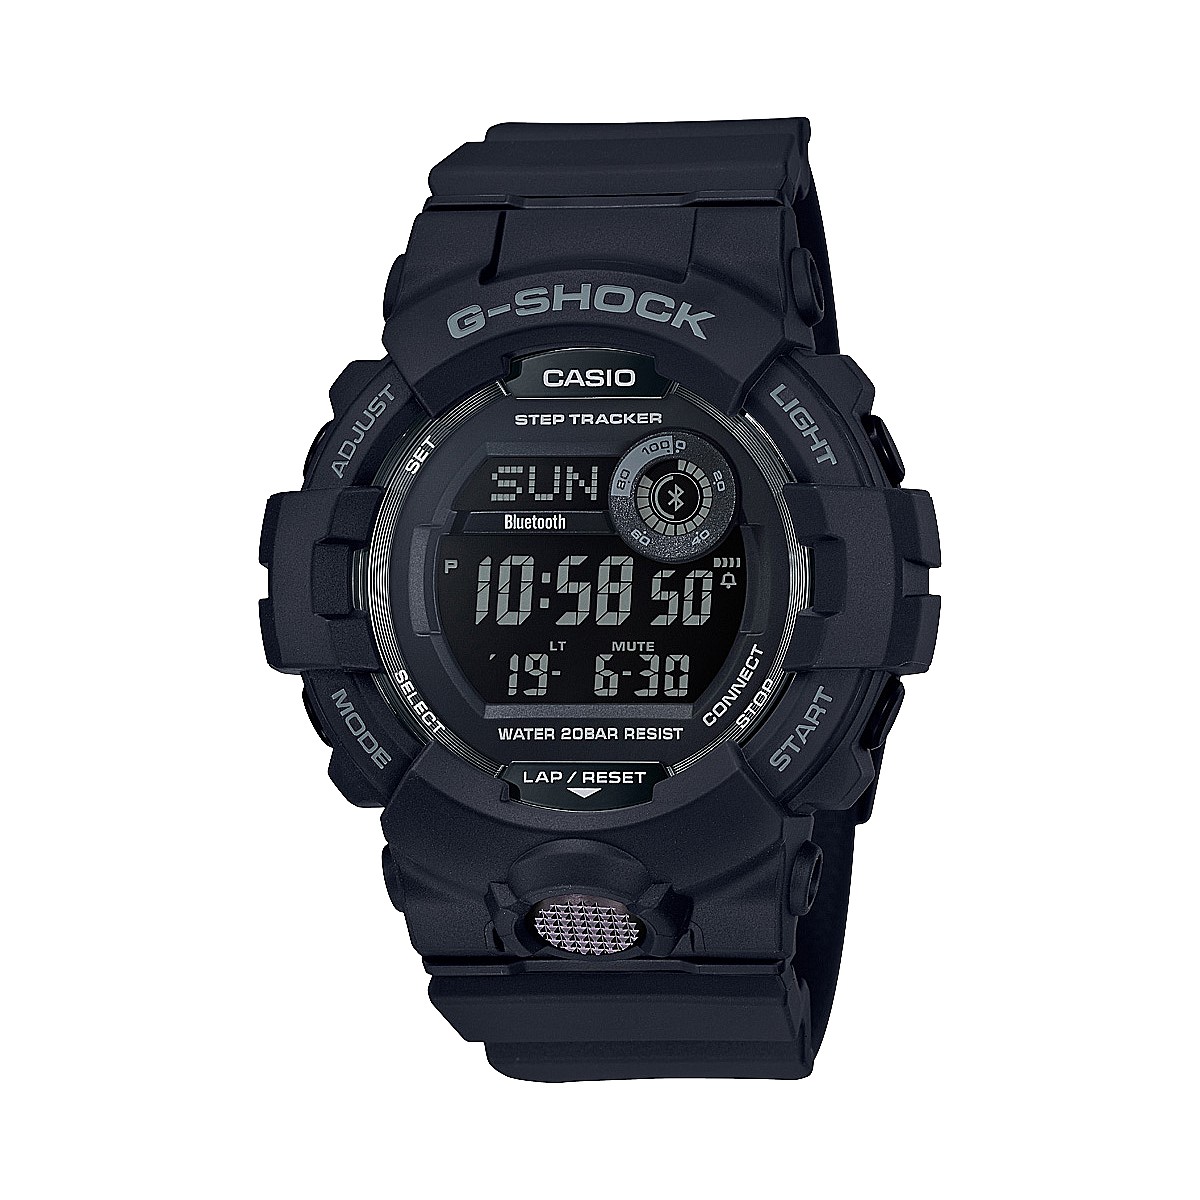 Accessories - Digital Watch G-Squad Steptracker Black GBD800-1B